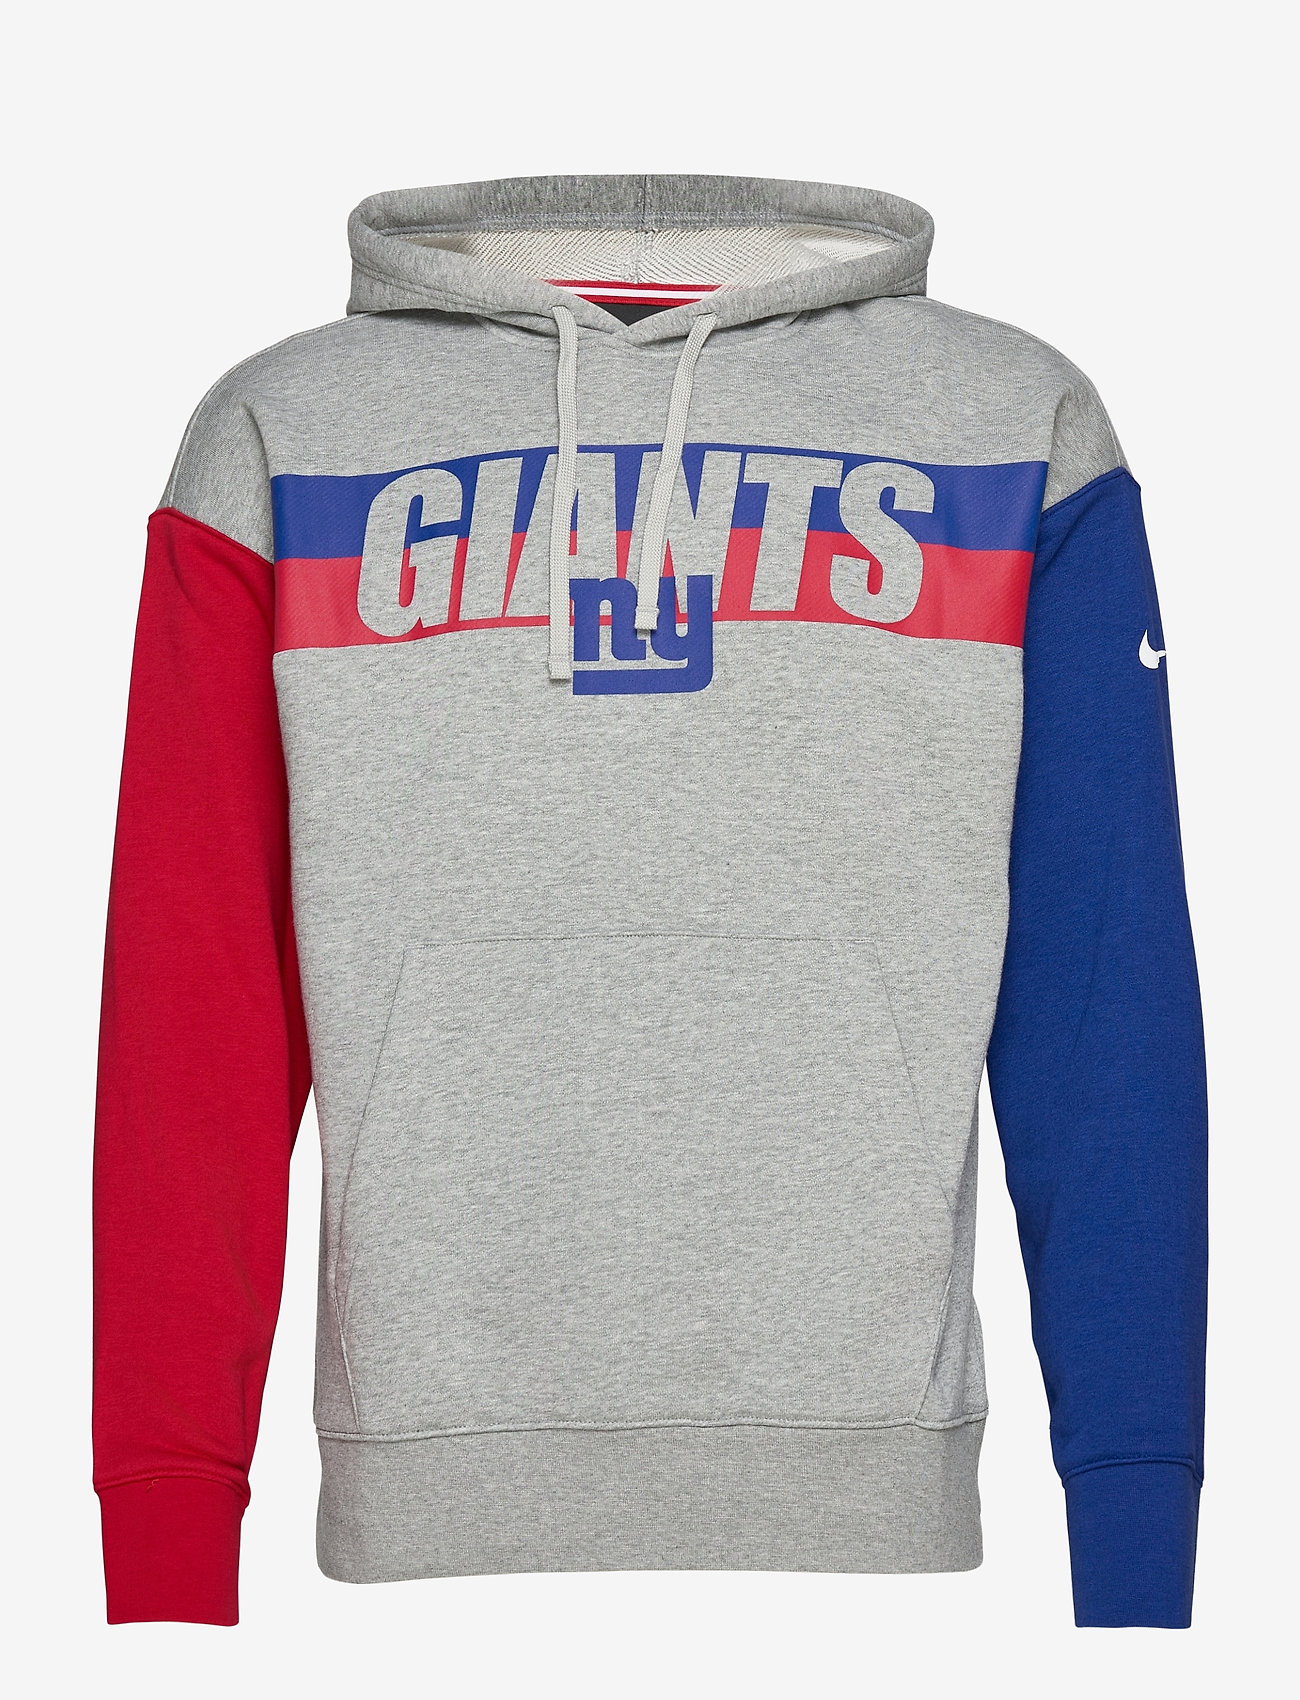 nike giants sweatshirt,Free delivery 